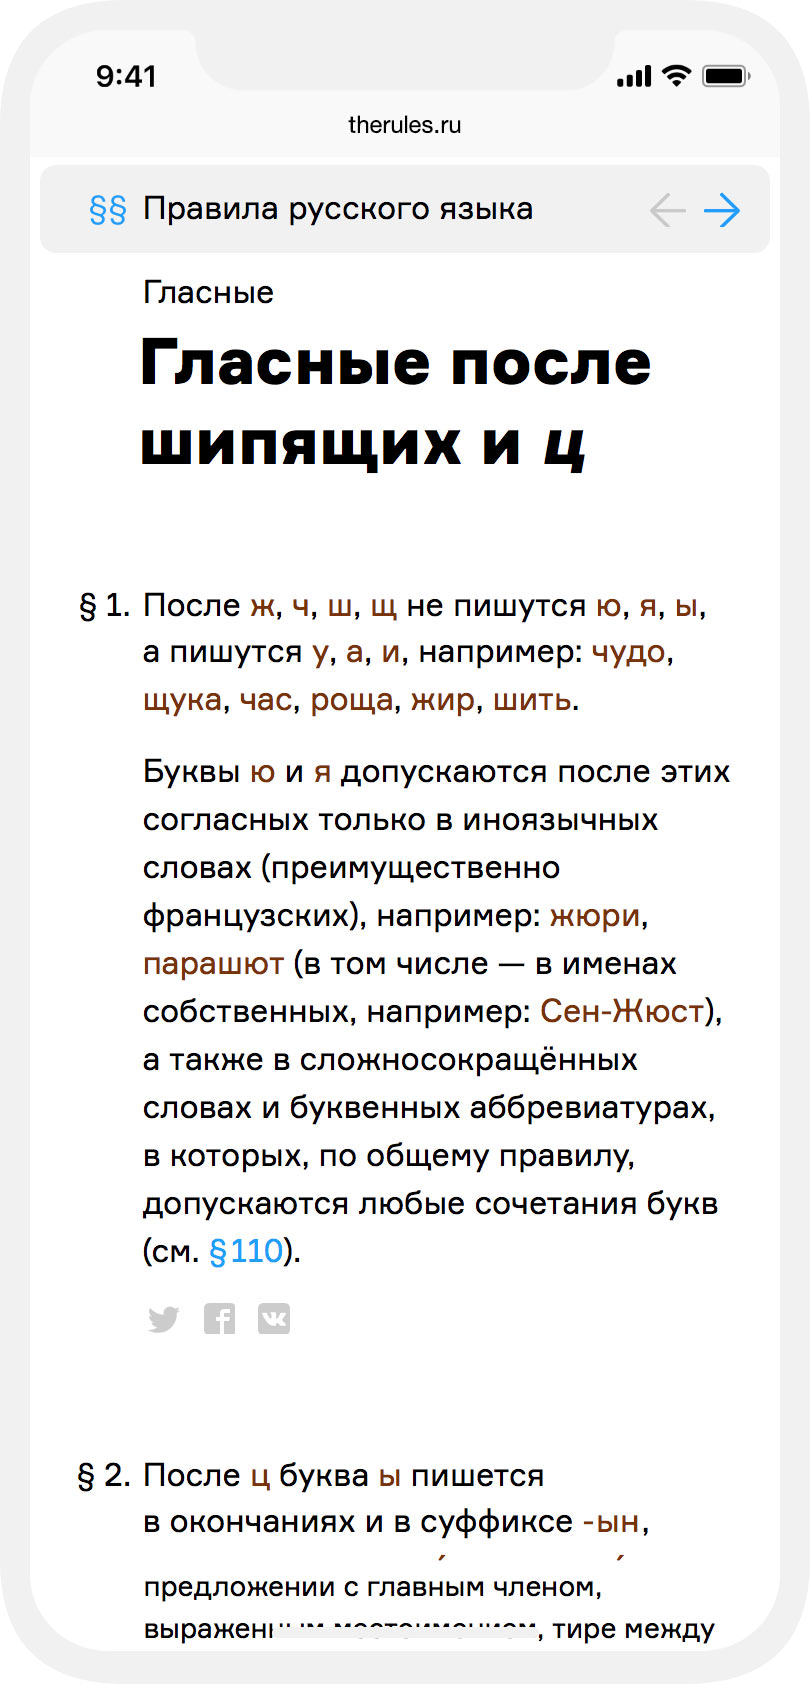 Сайт правил русского языка